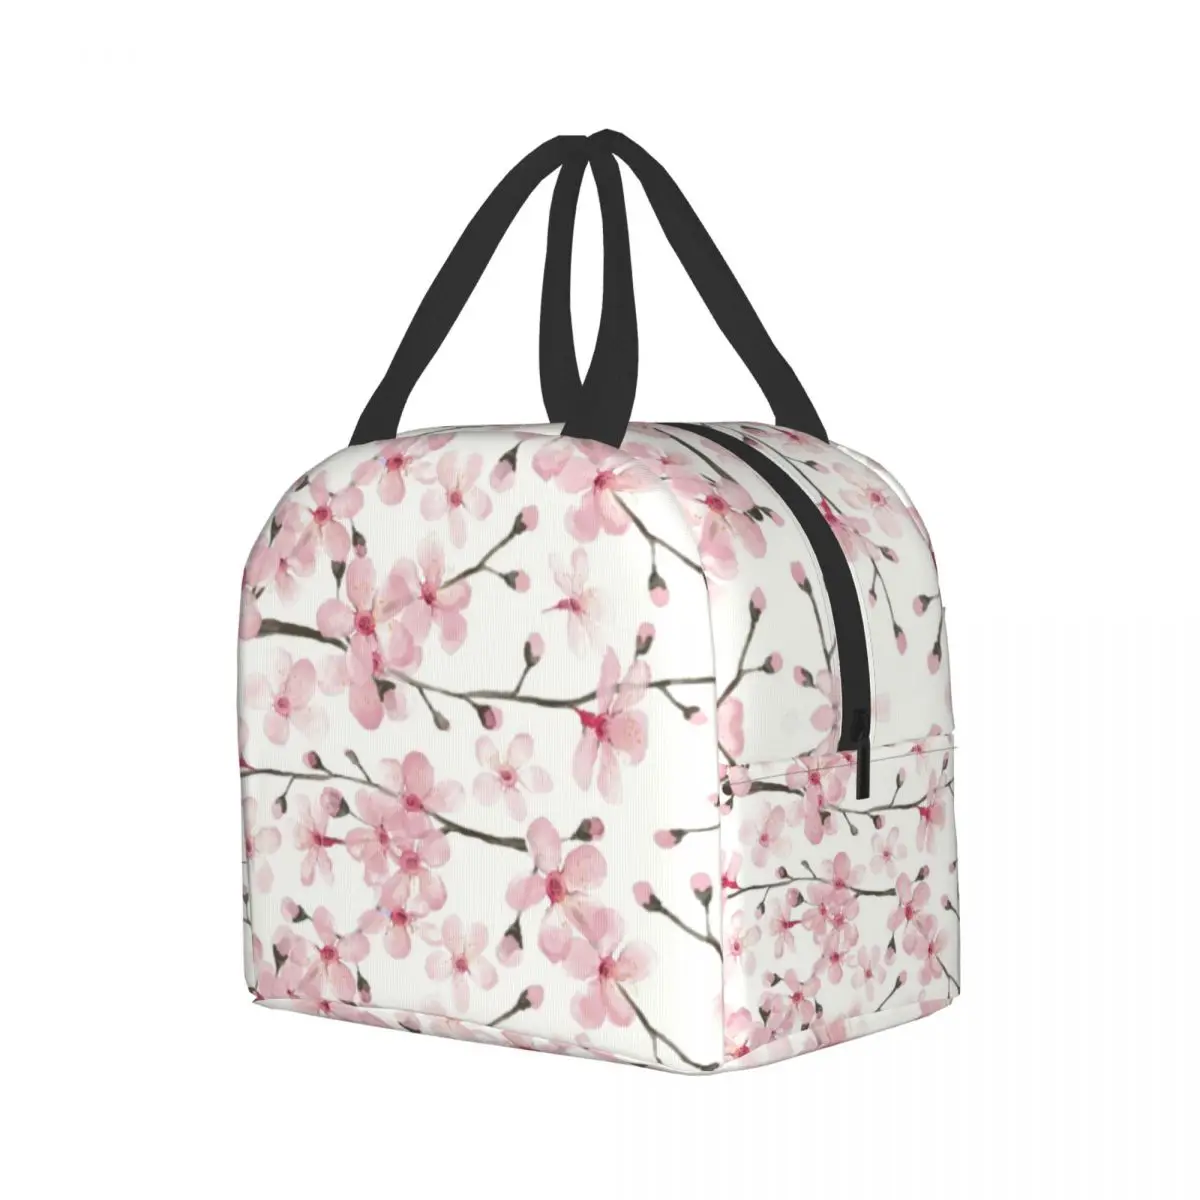 Японская вишневая изолированная сумка для ланча с цветочным рисунком, Многоразовый холодильник, термос для еды, Ланч-бокс для работы, учебы и путешествий Изображение 1